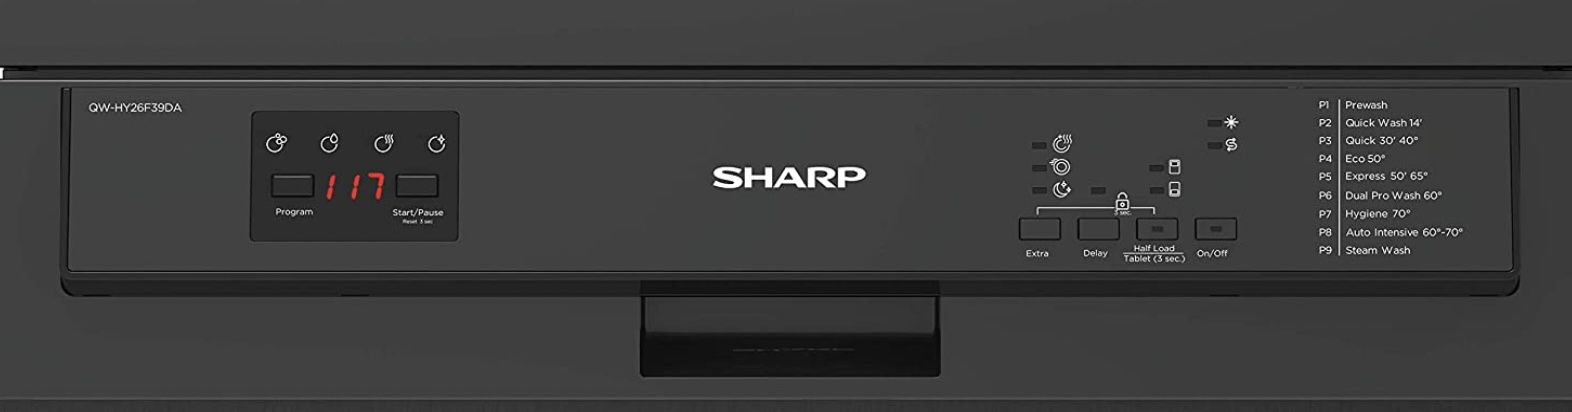 Sharp QW HY26F39DA DE Freistehender Geschirrspüler mit Dampf Funktion ab 389€ (statt 479€)